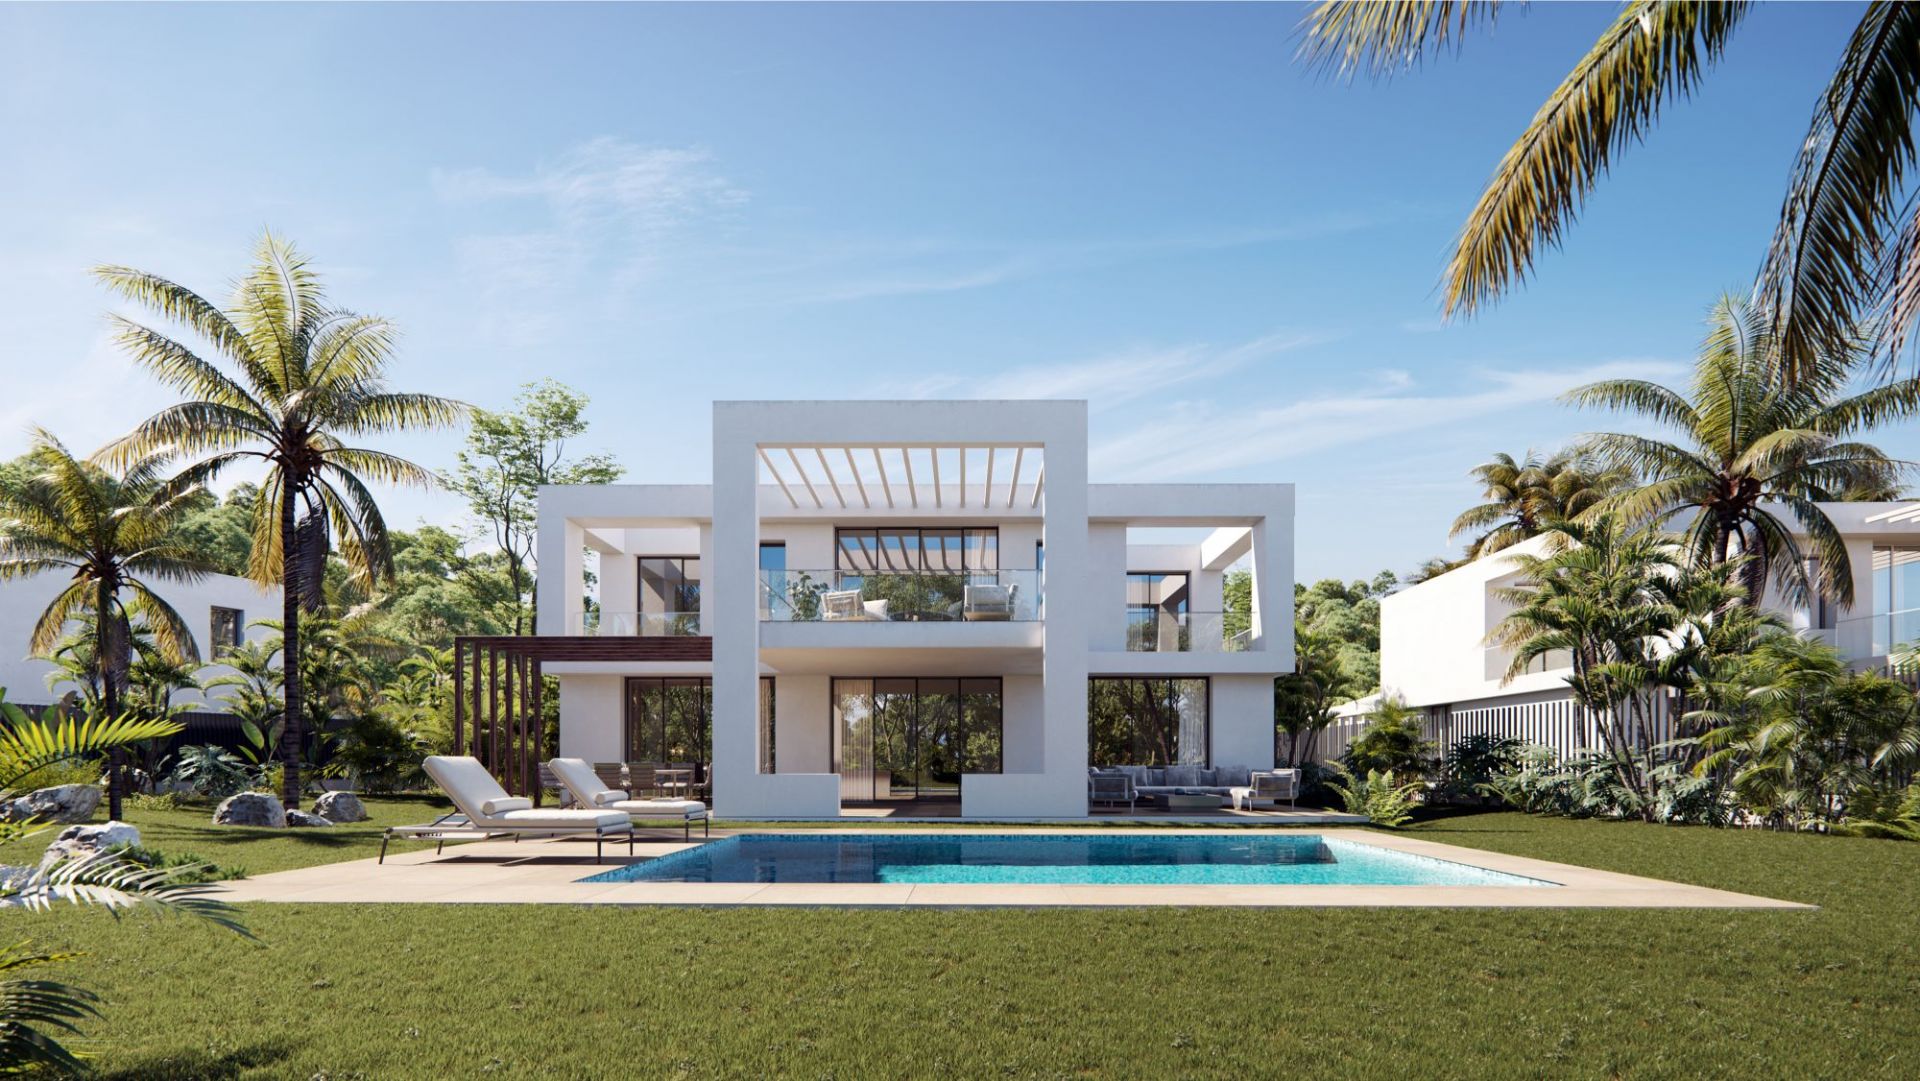 Exclusive Modern Villas In Santa Clara Golf Engel Volkers Marbella